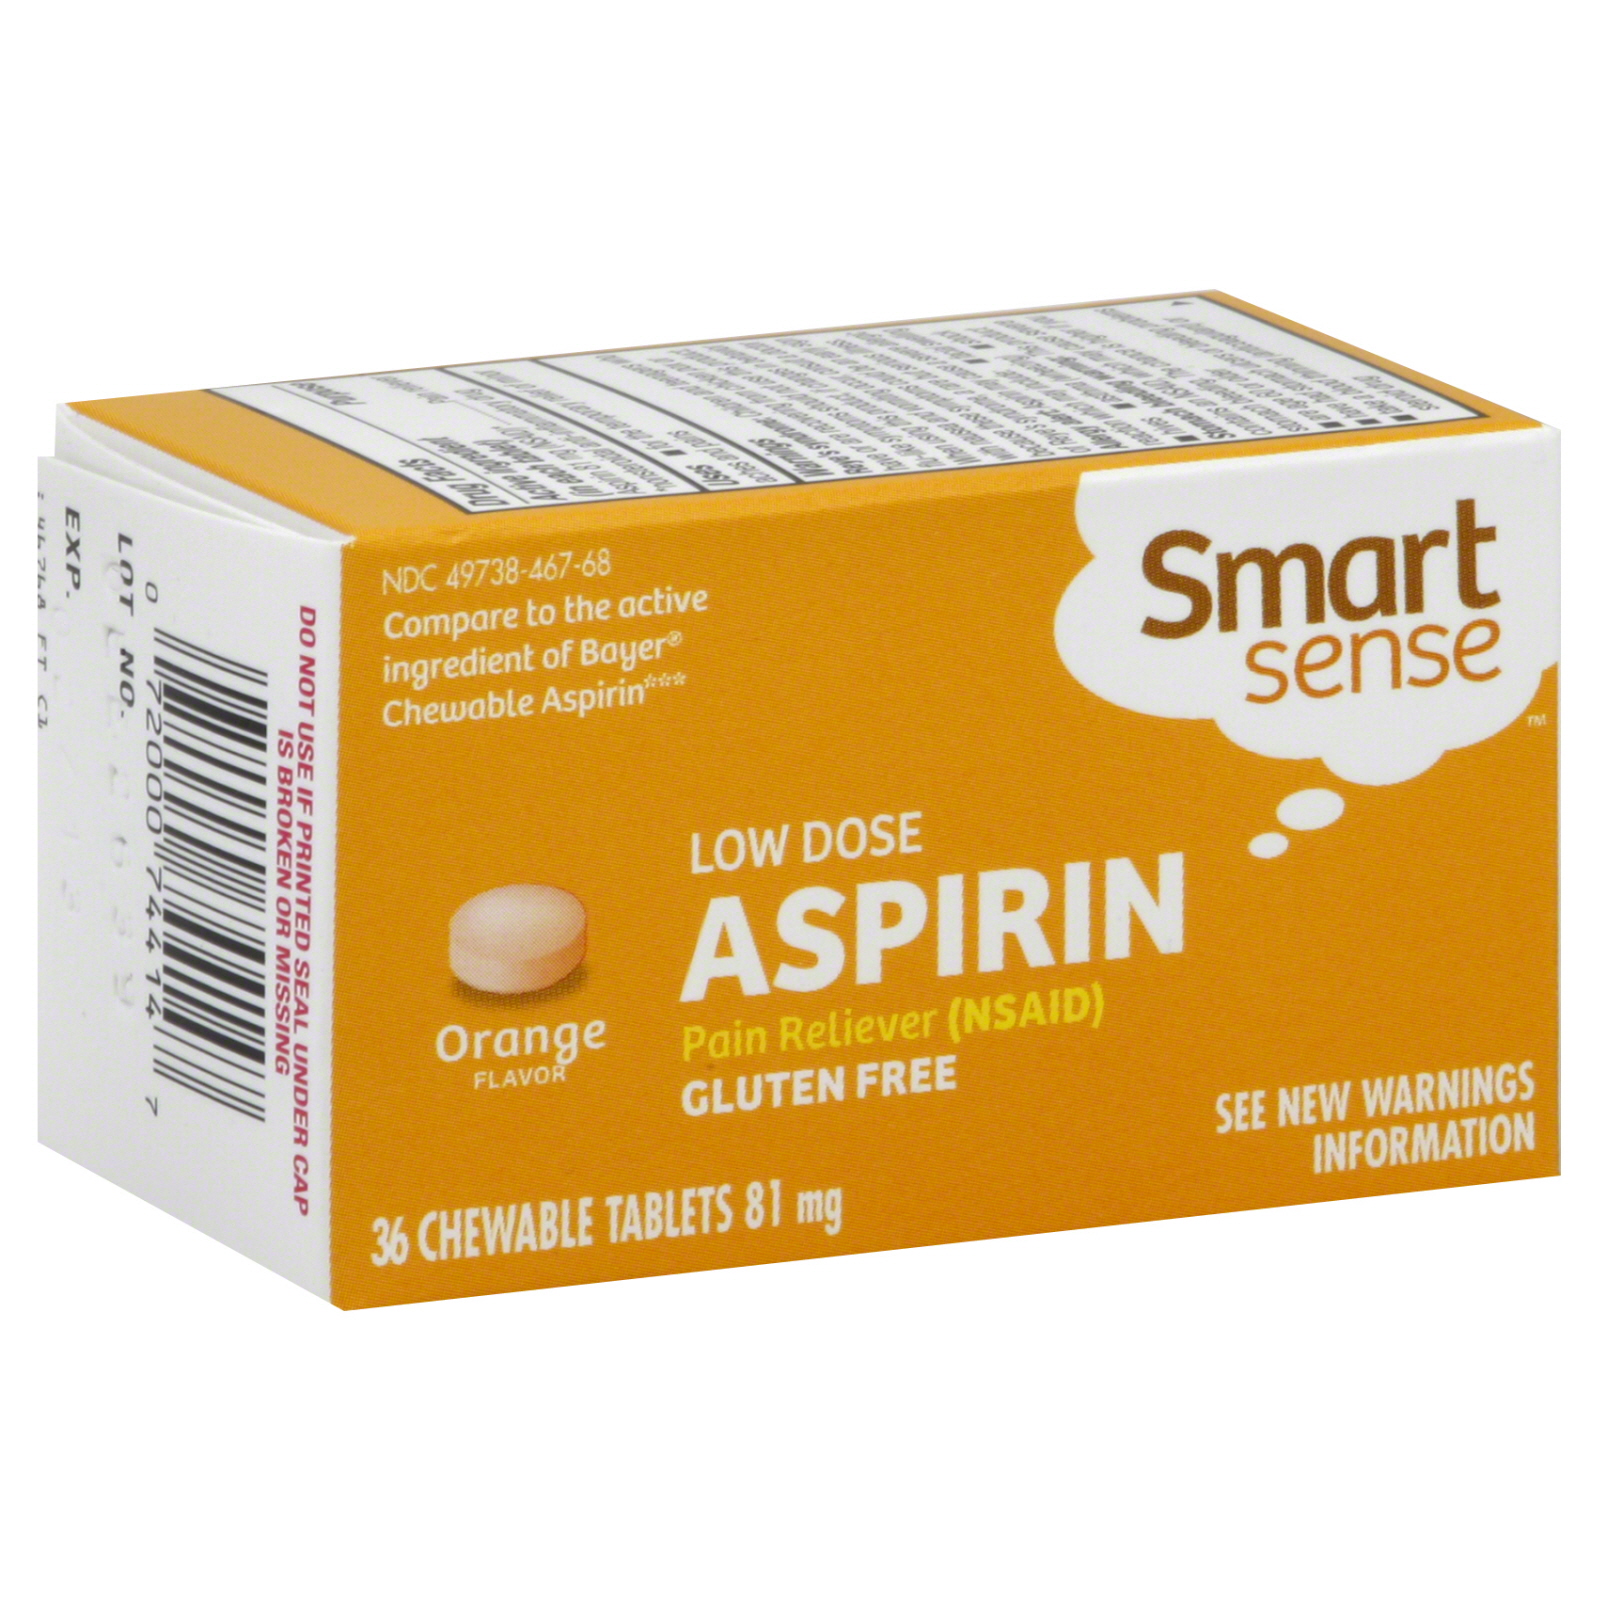 Smart Sense Aspirin, Low Dose, 81 mg, Orange Flavor Chewable Tablets, 36 tablets